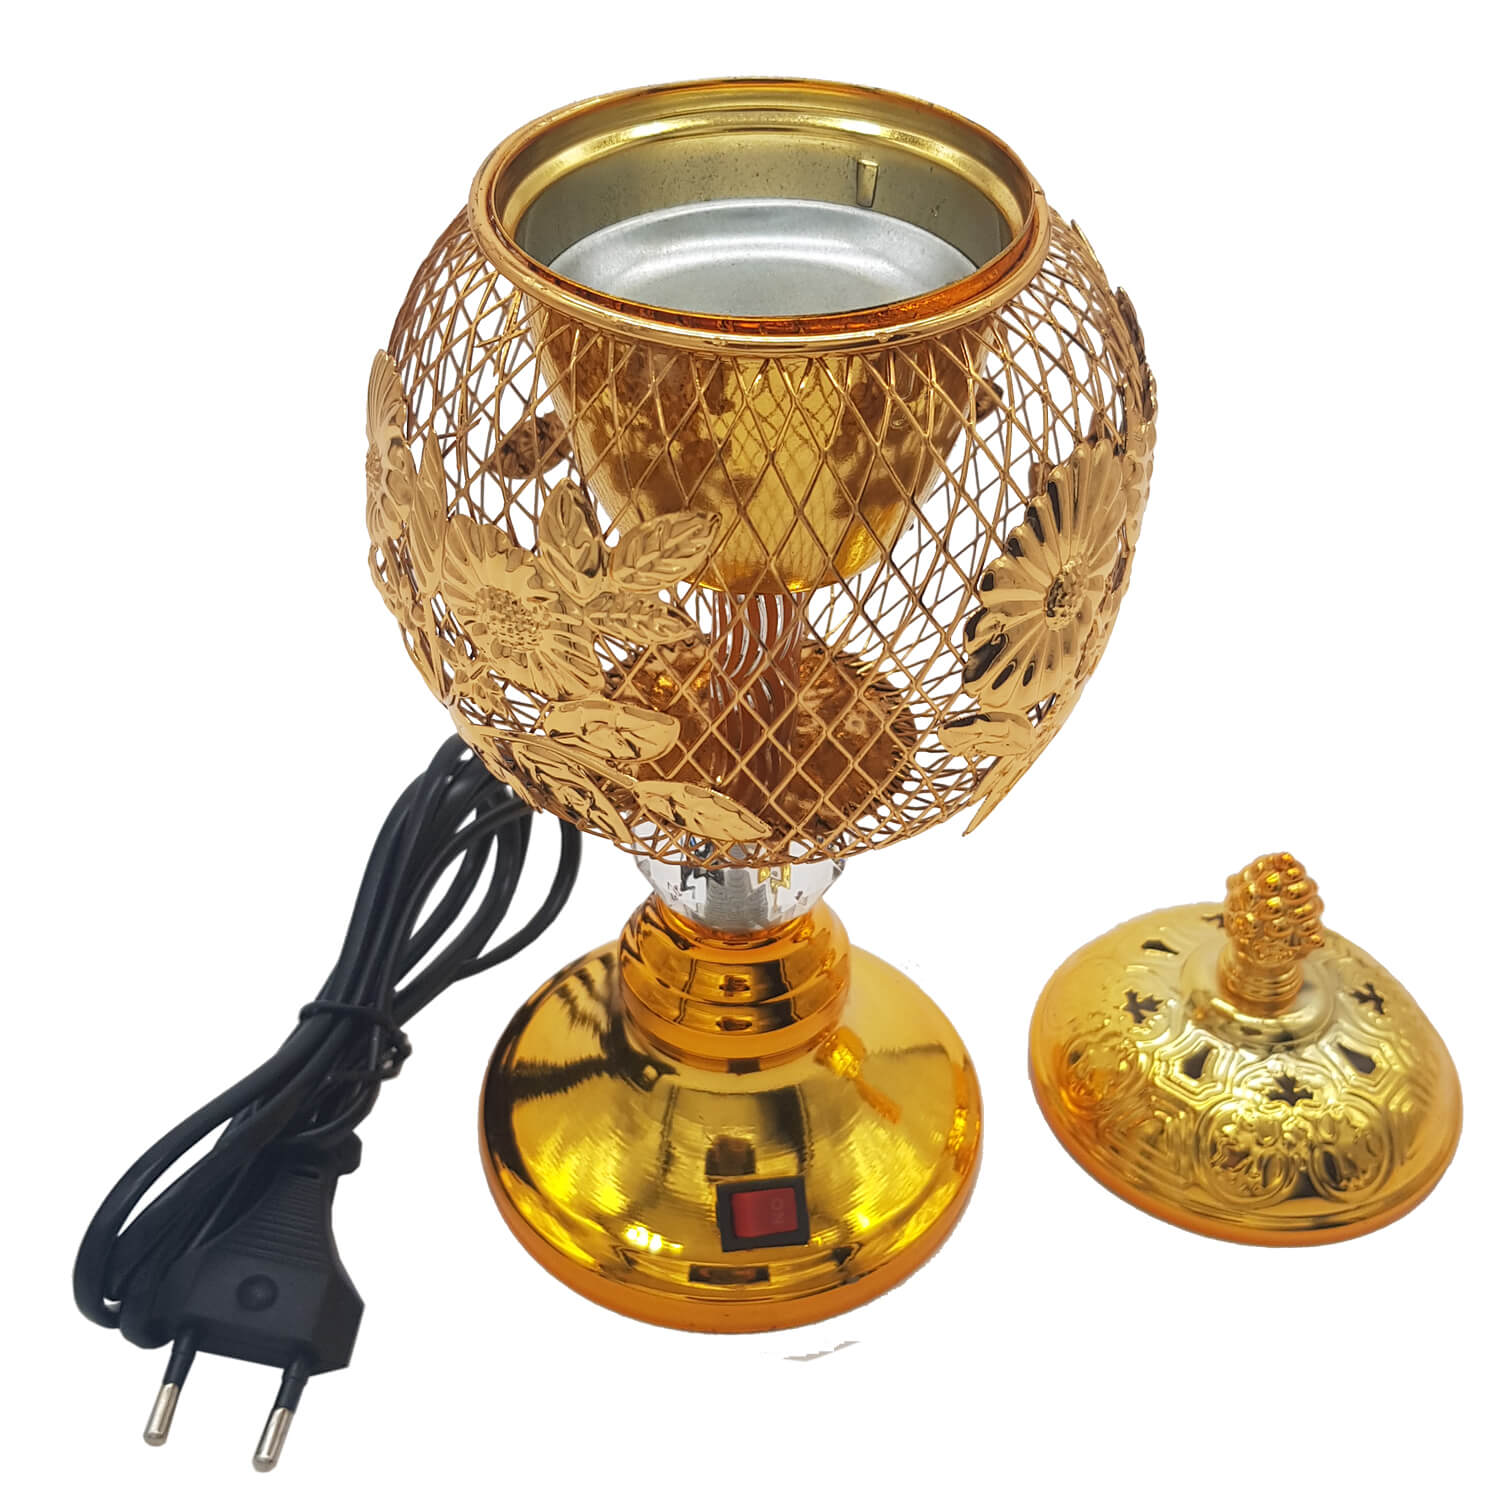 Electrical Bakhoor Burner & 40g Fragrance Paste - Golden